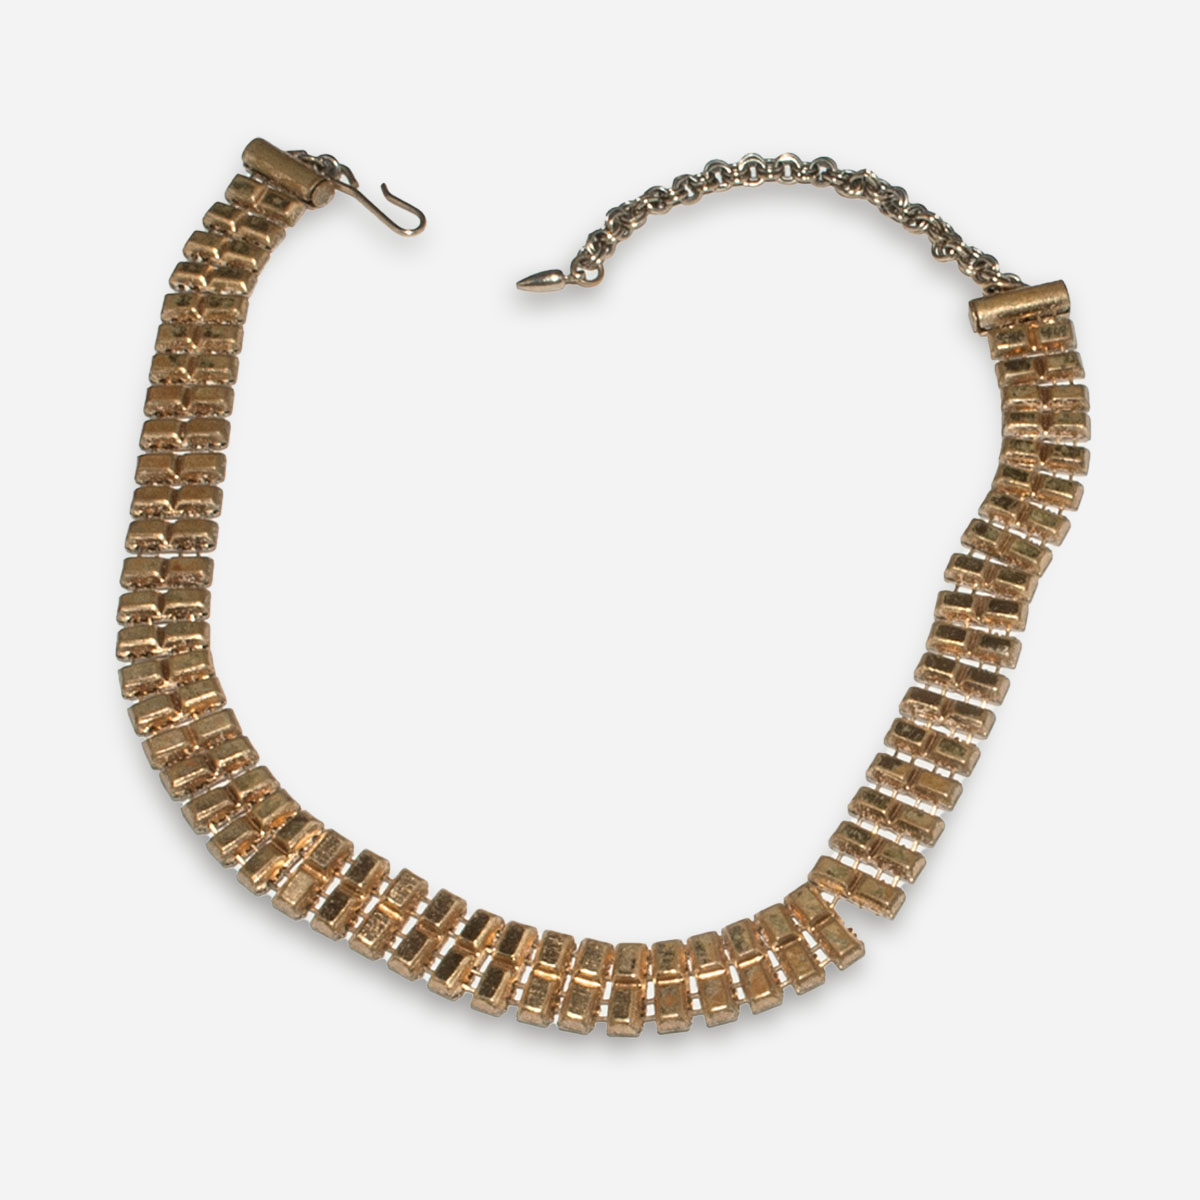 Vintage Kramer theromset necklace